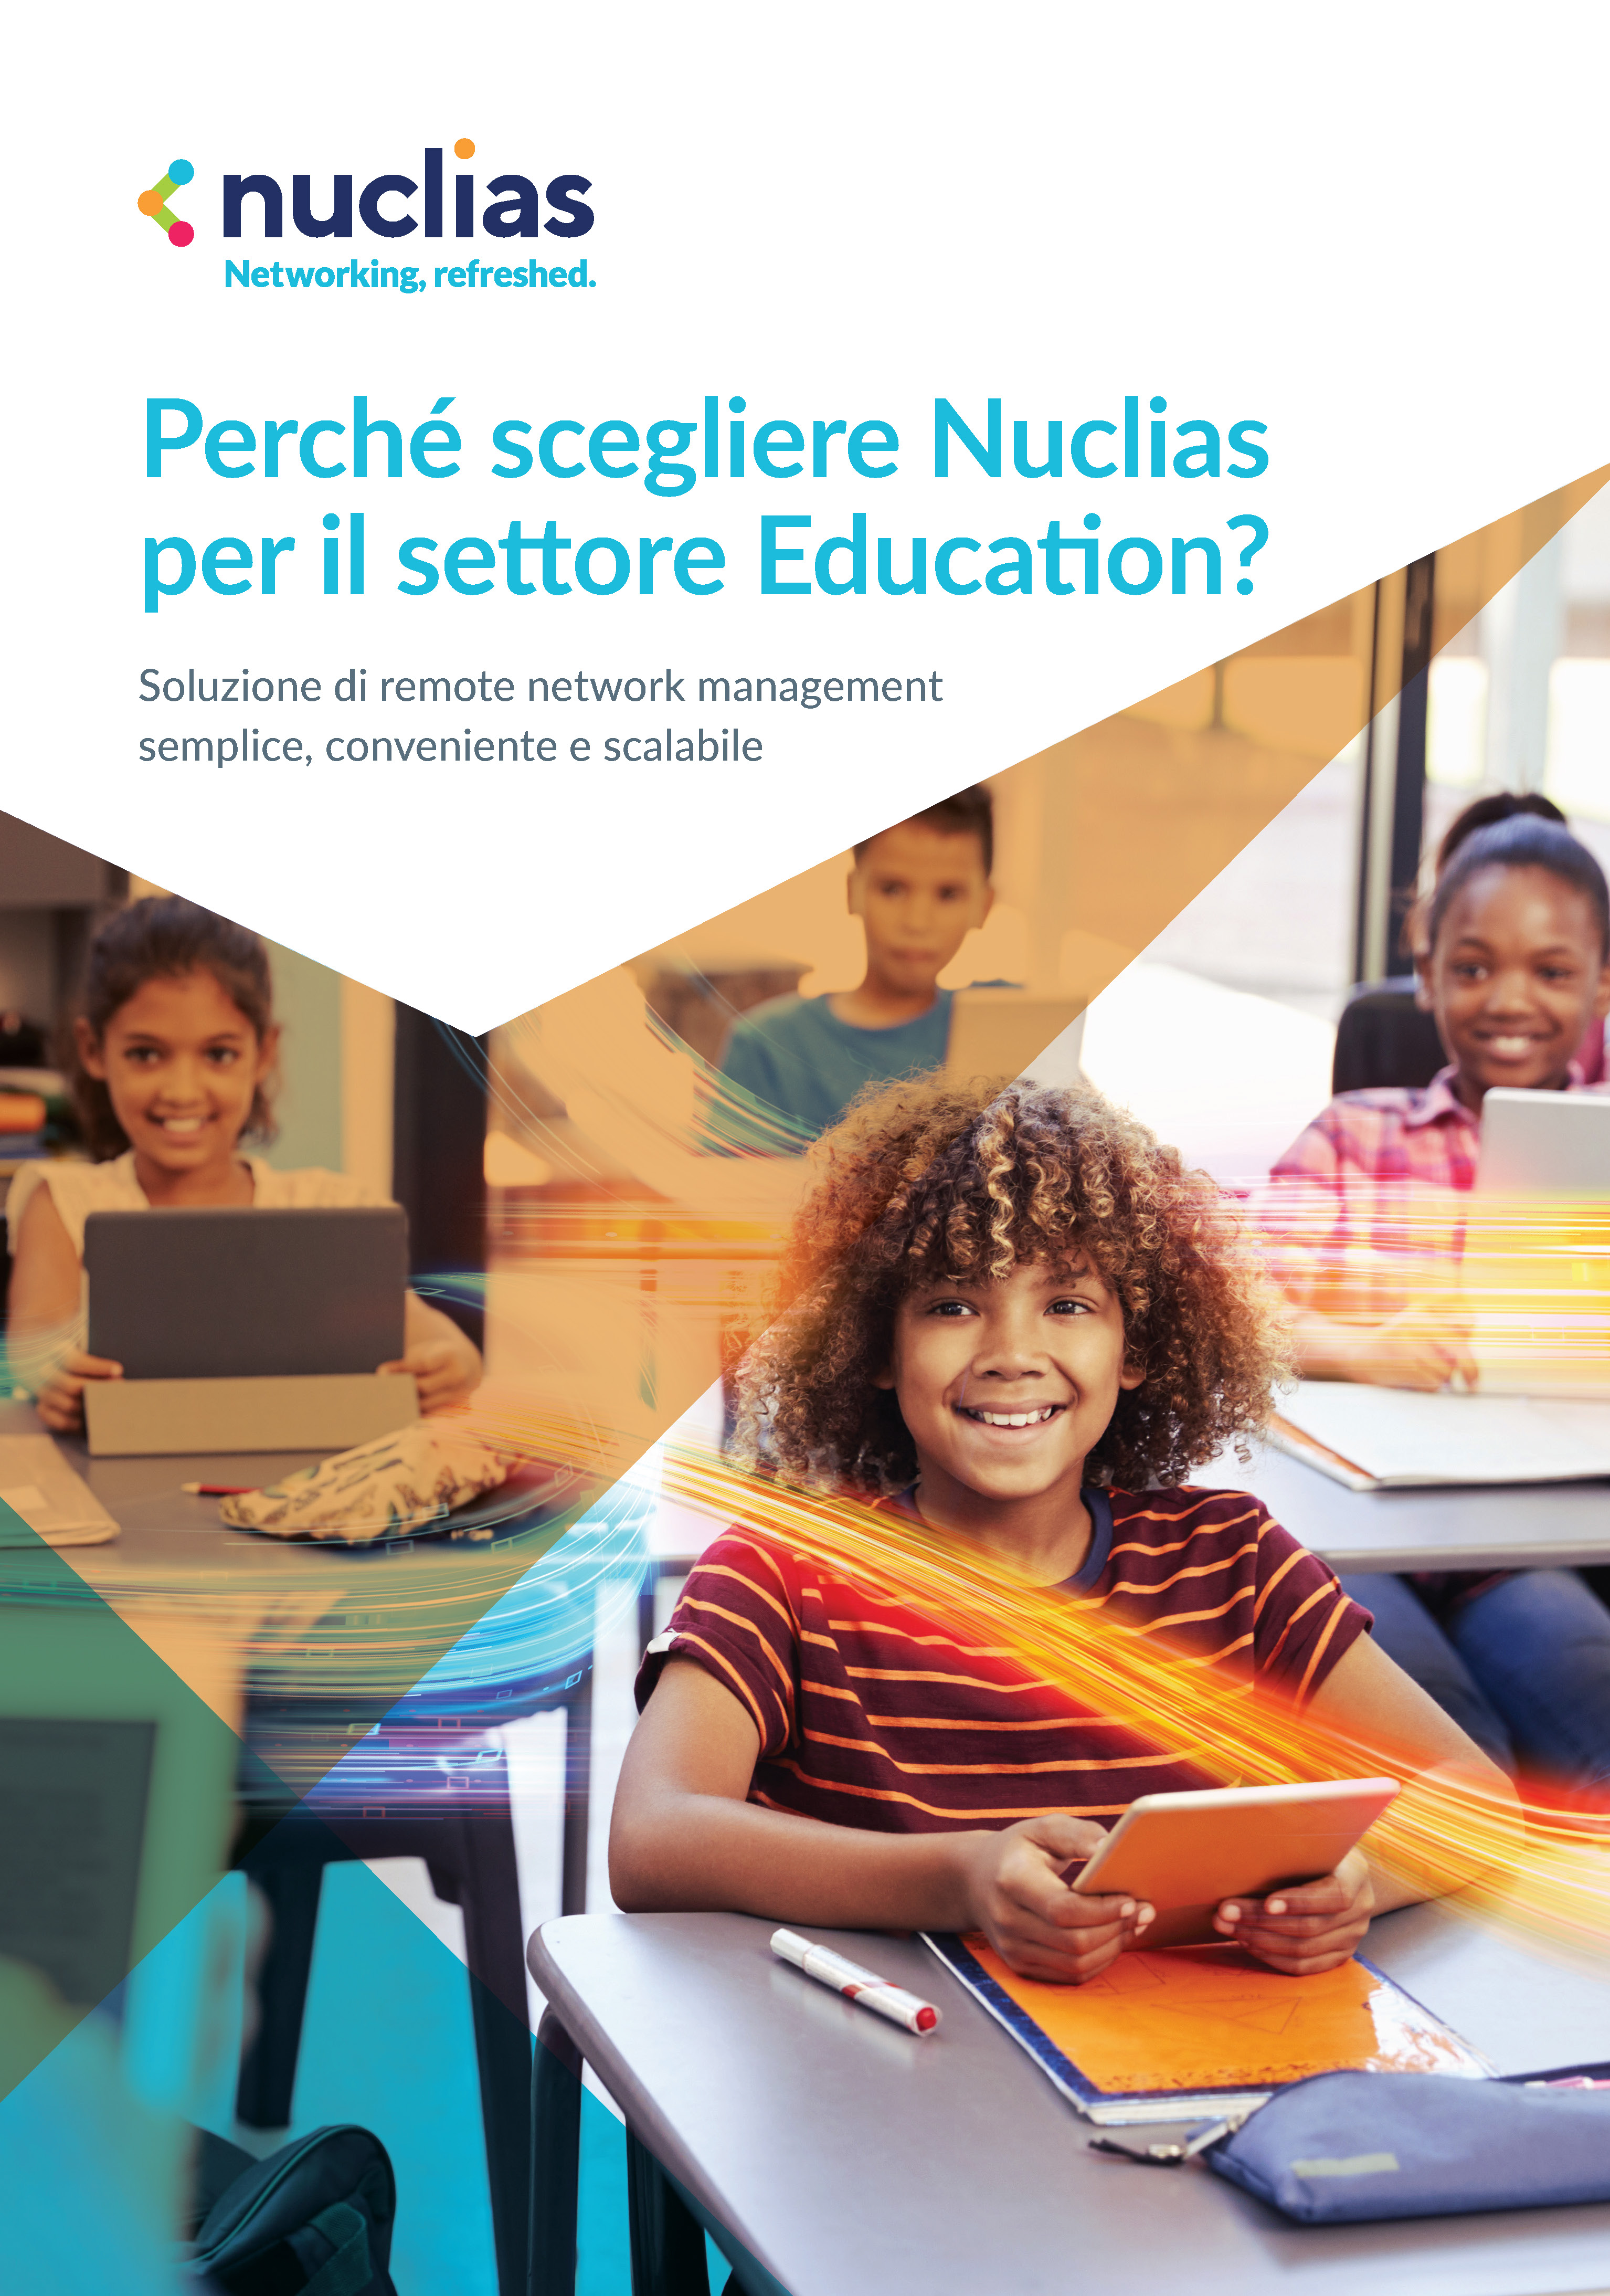 Perchè scegliere Nuclias per il settore Education